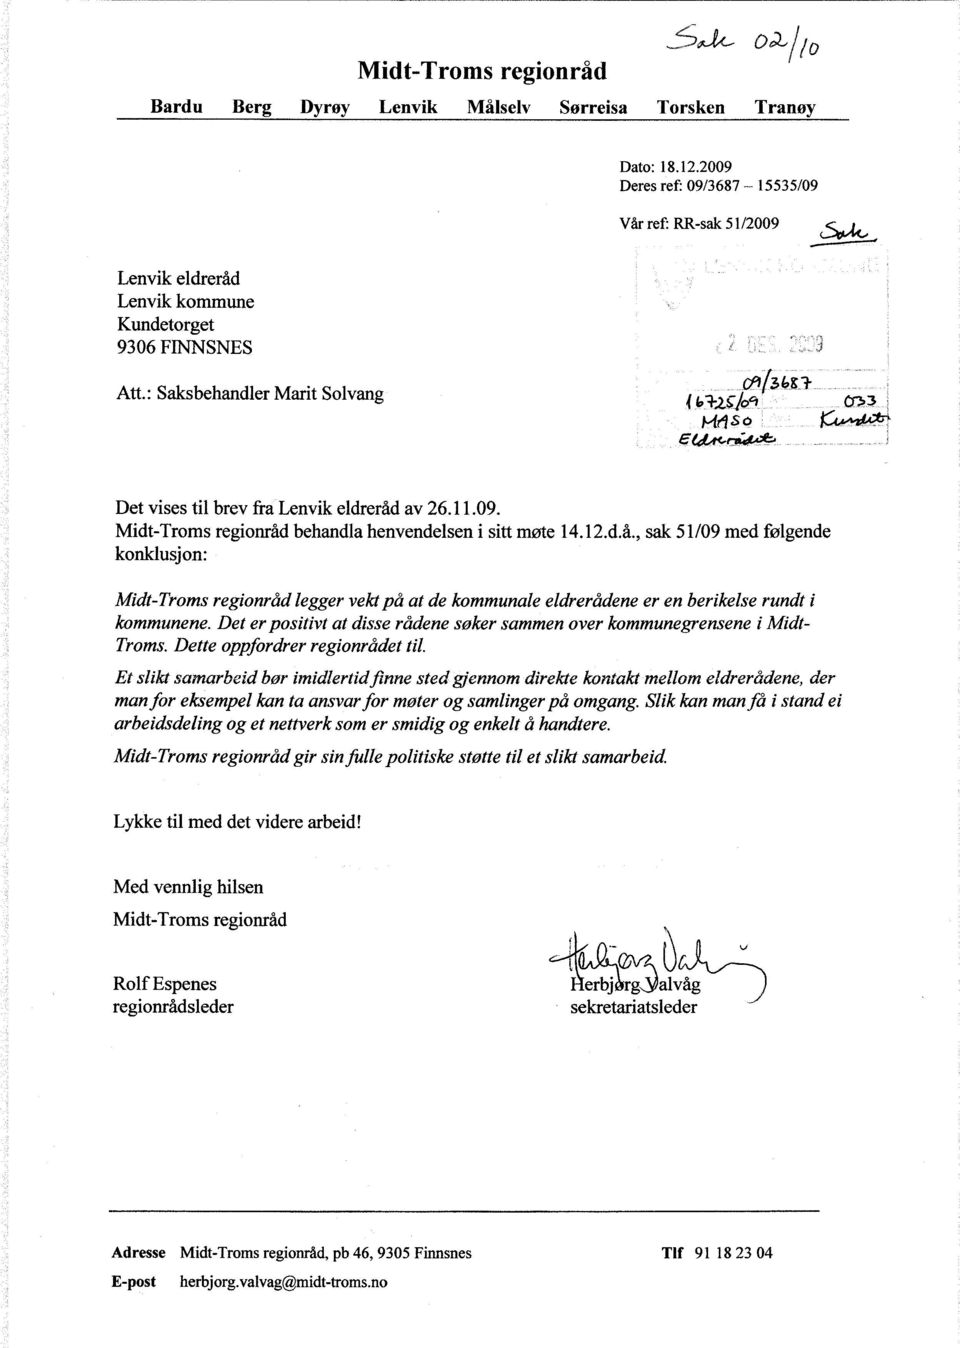 : Saksbehandler Marit Solvang < 1,b'33, M4 s a ^ Det vises til brev fra Lenvik eldreråd